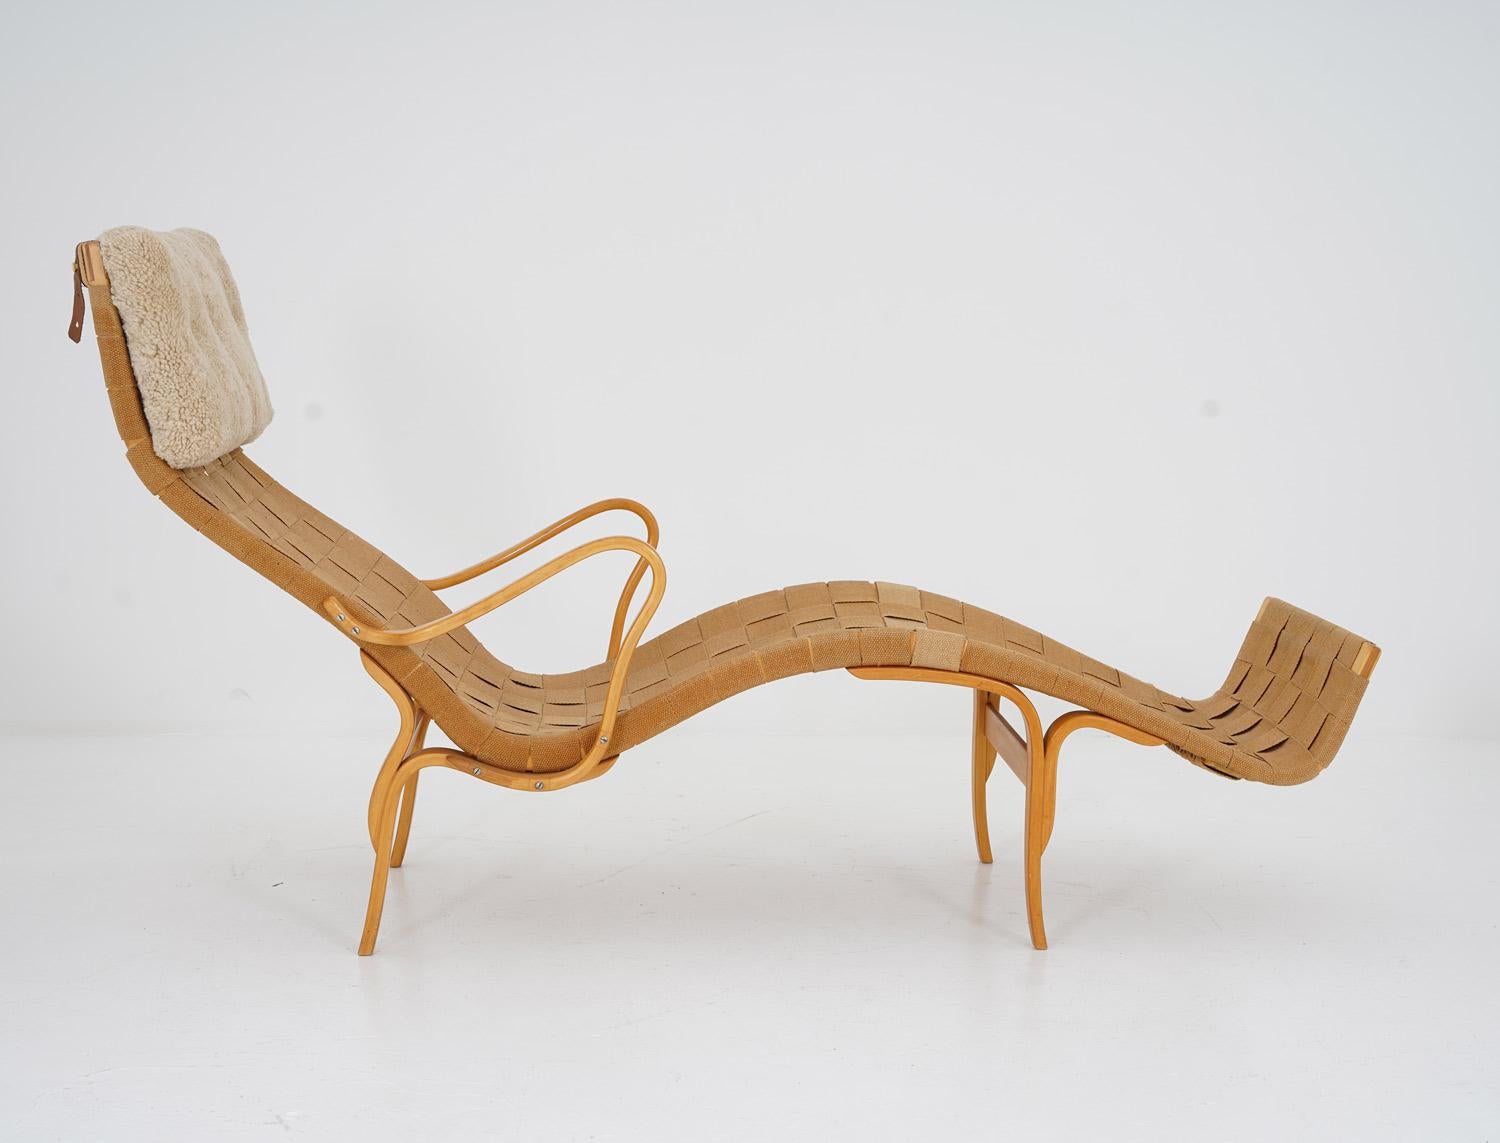 Magnifique chaise longue Pernilla 3, conçue par Bruno Mathsson pour Karl Andersson & Söner, Suède.
Condit : Bon état d'origine avec une légère patine. Les sangles sont intactes et toutes les pièces sont d'origine à l'exception de l'oreiller qui est